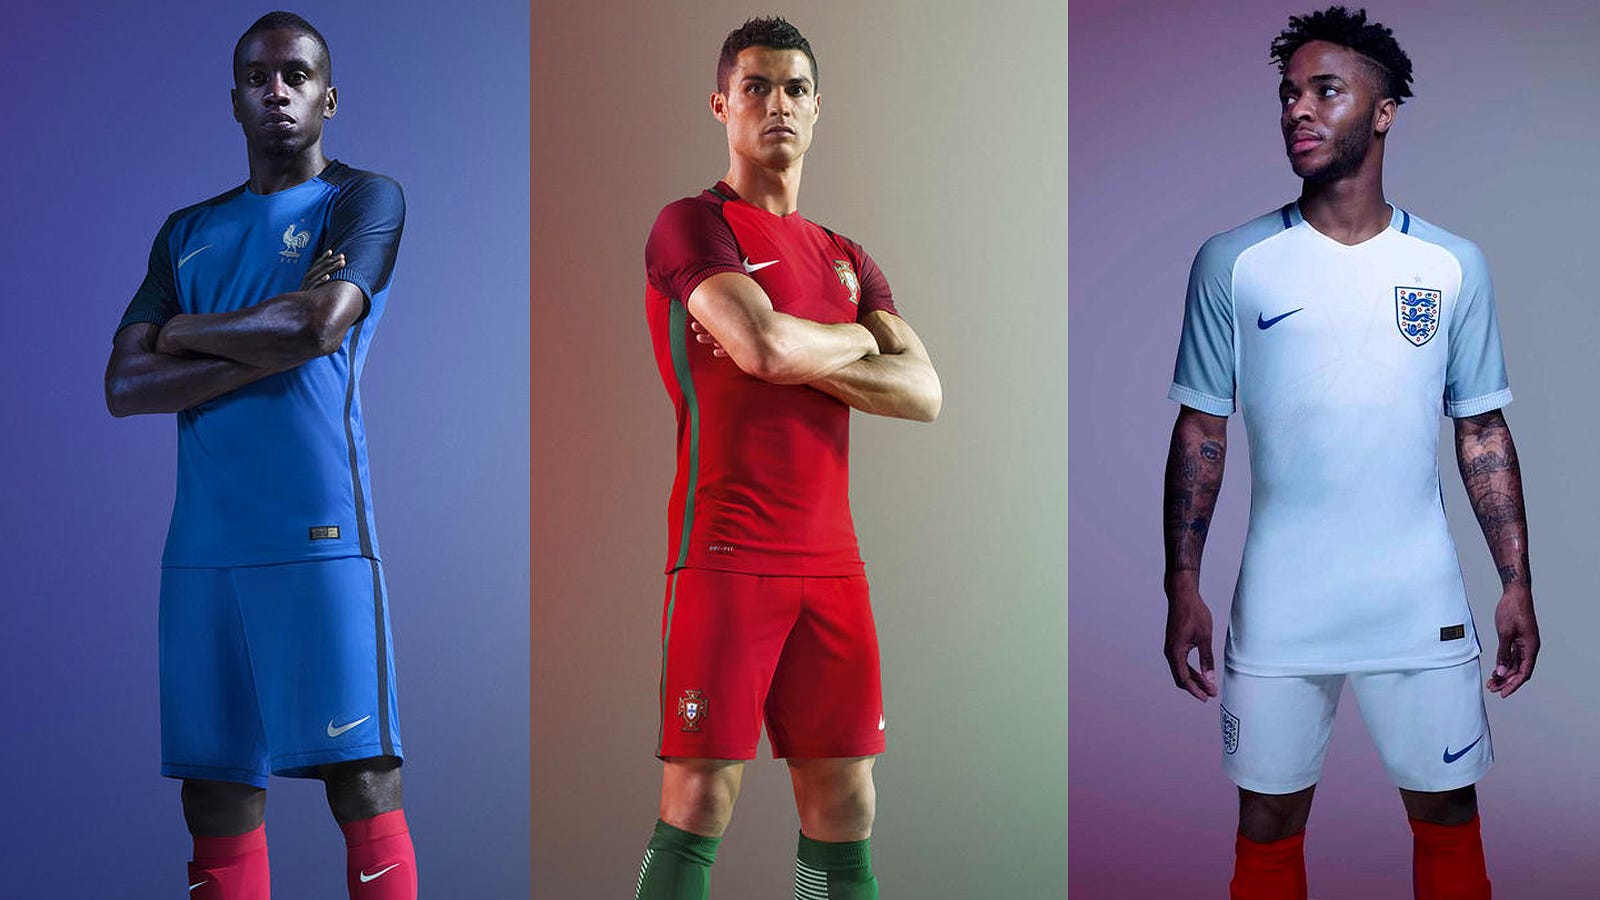 Nike's Euro 2016 identikits break the 